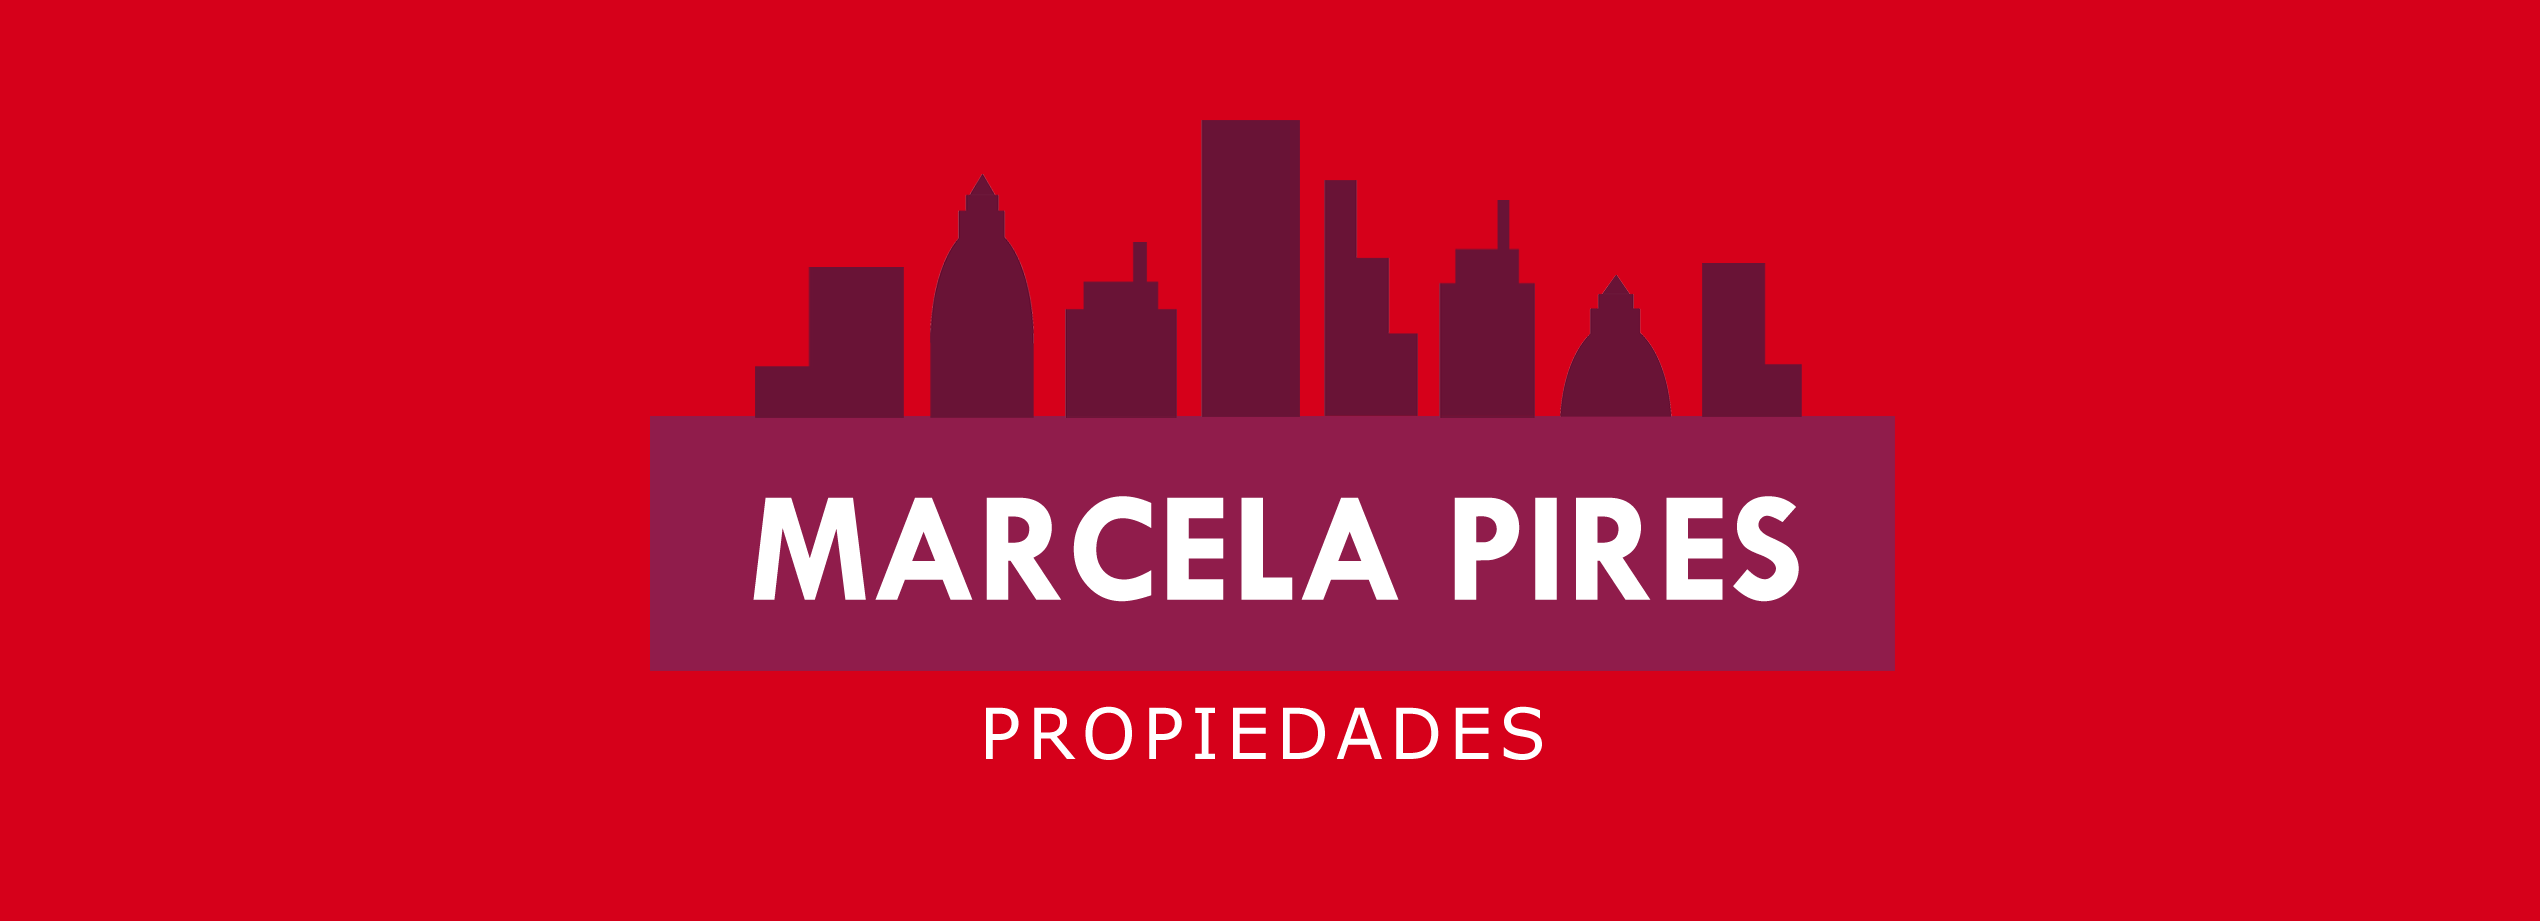 MARCELA PIRES PROPIEDADES